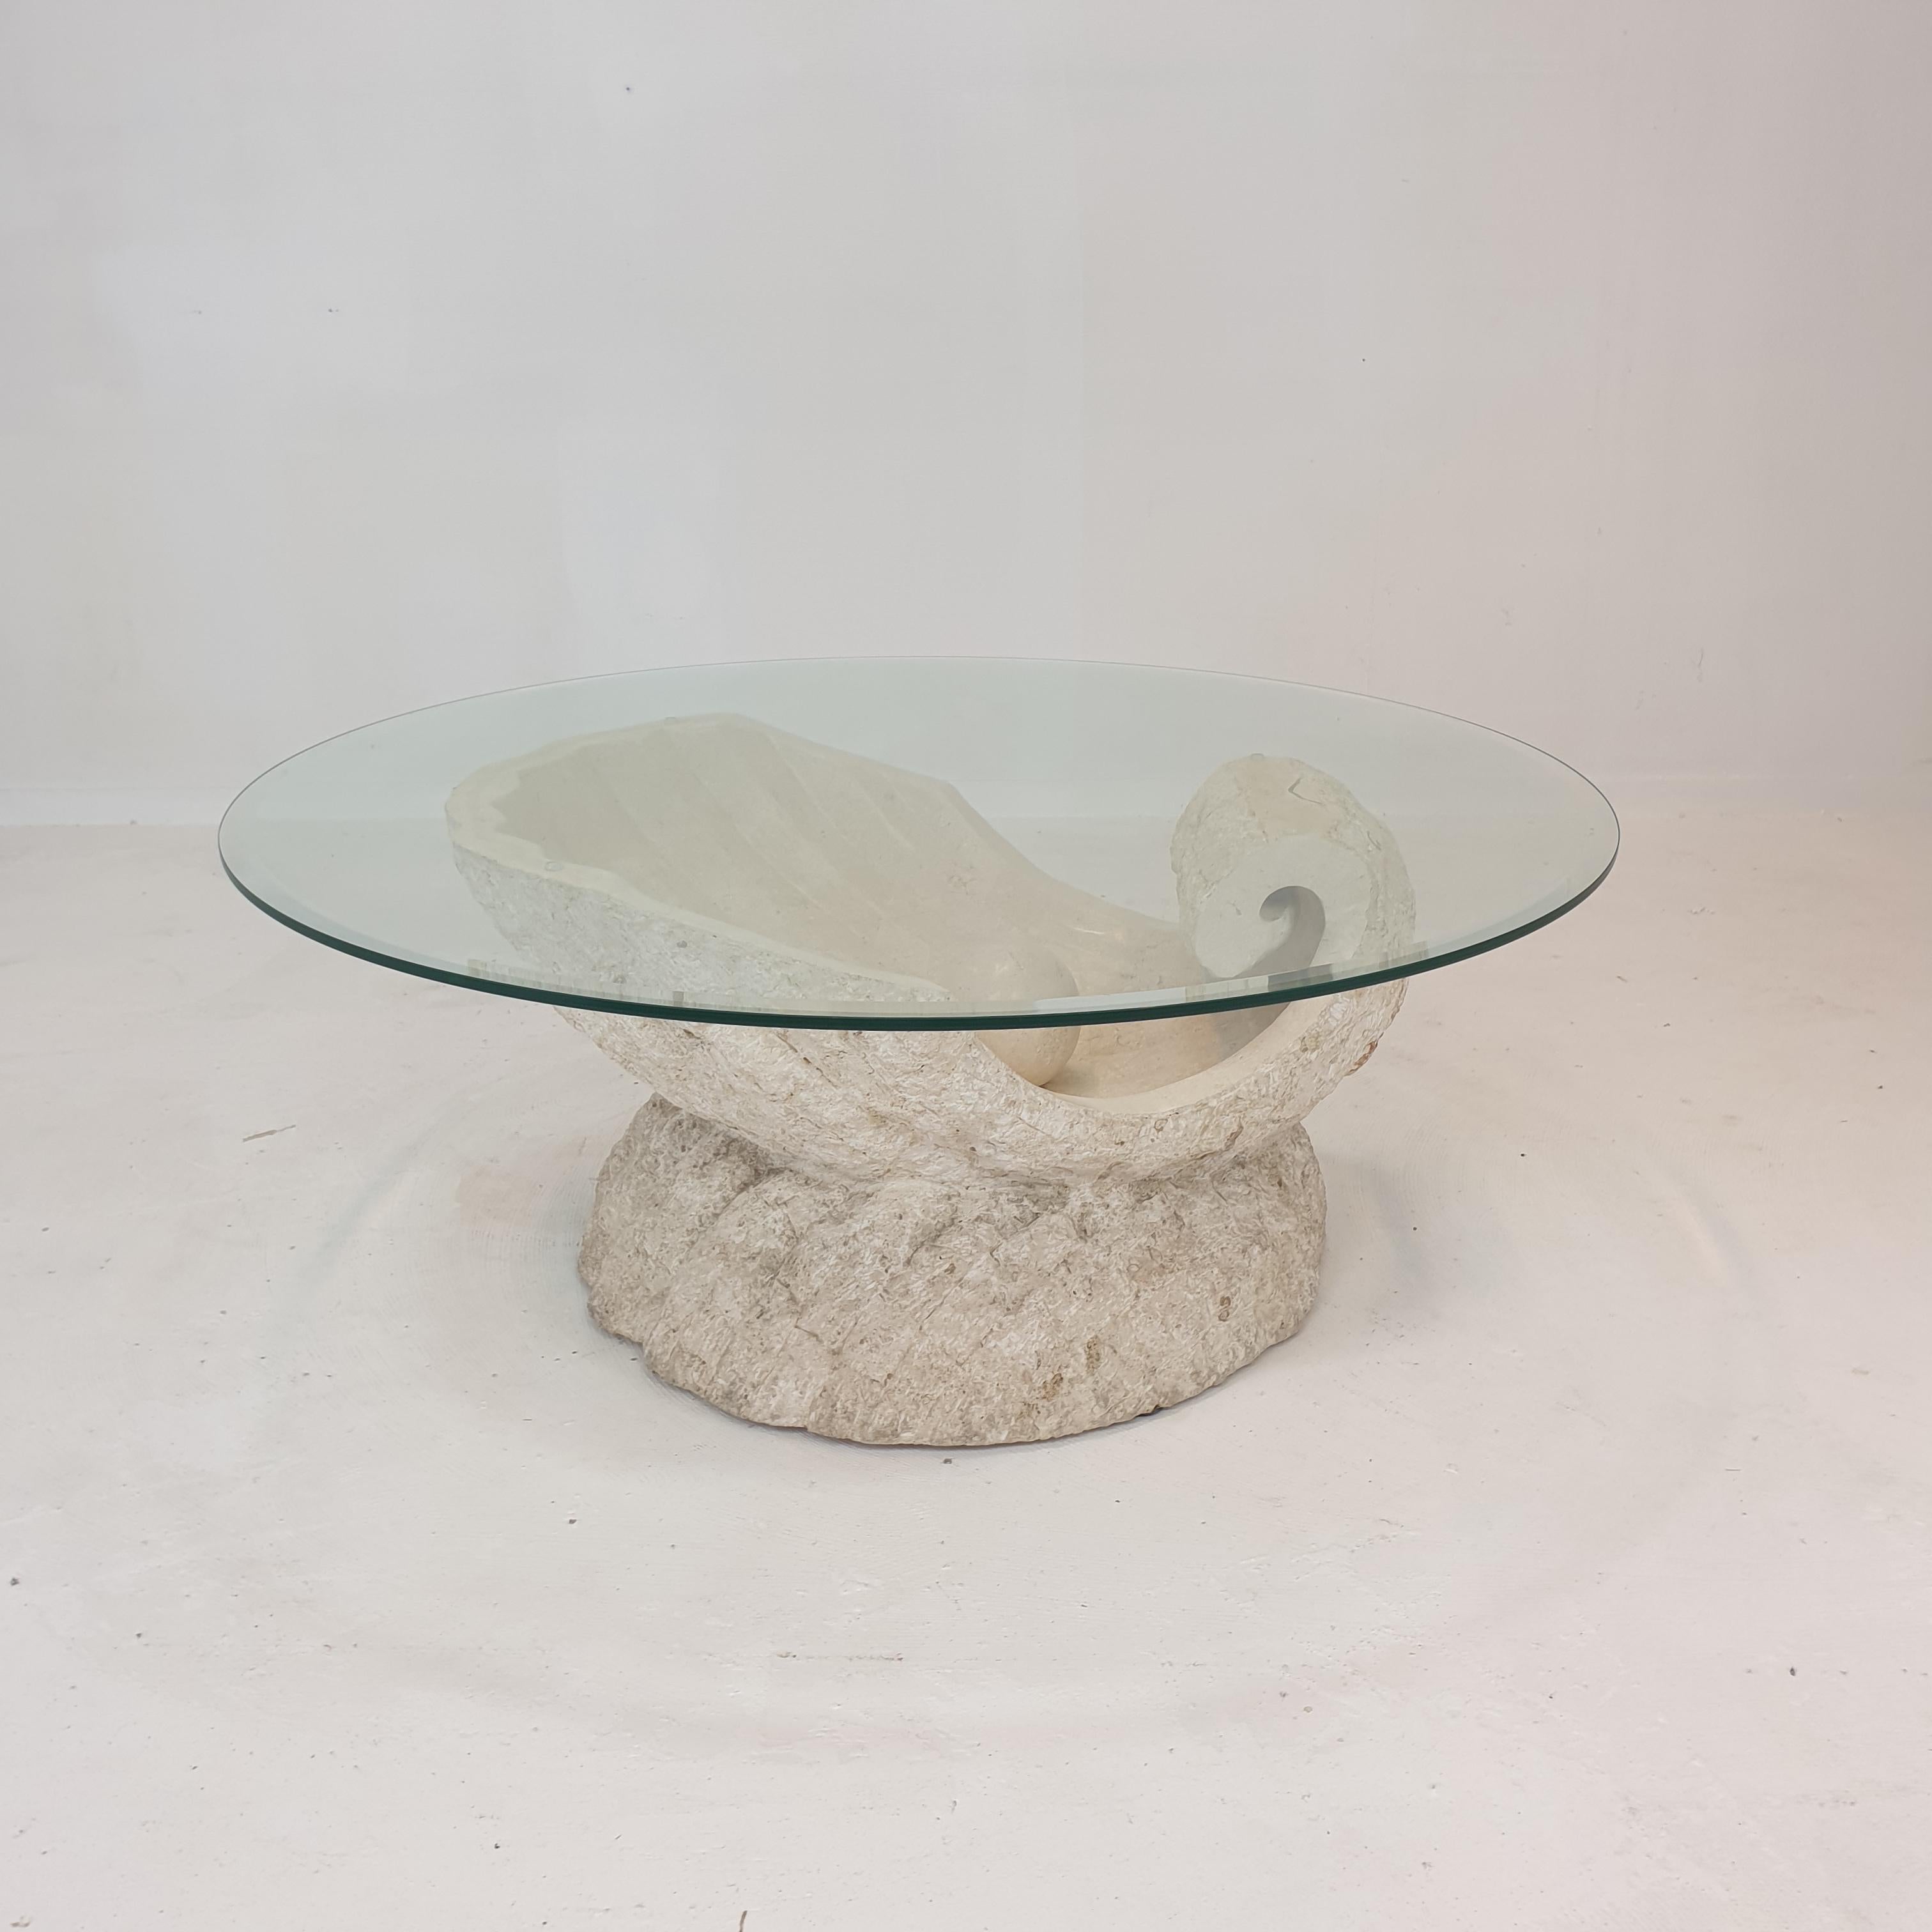 Très belle table basse ou d'appoint par Magnussen Ponte, années 1980.
Il a la forme magnifique d'une huître avec une perle à l'intérieur.

Cette table étonnante est fabriquée en pierre de Mactan ou en pierre fossile, un motif de brique aux bords